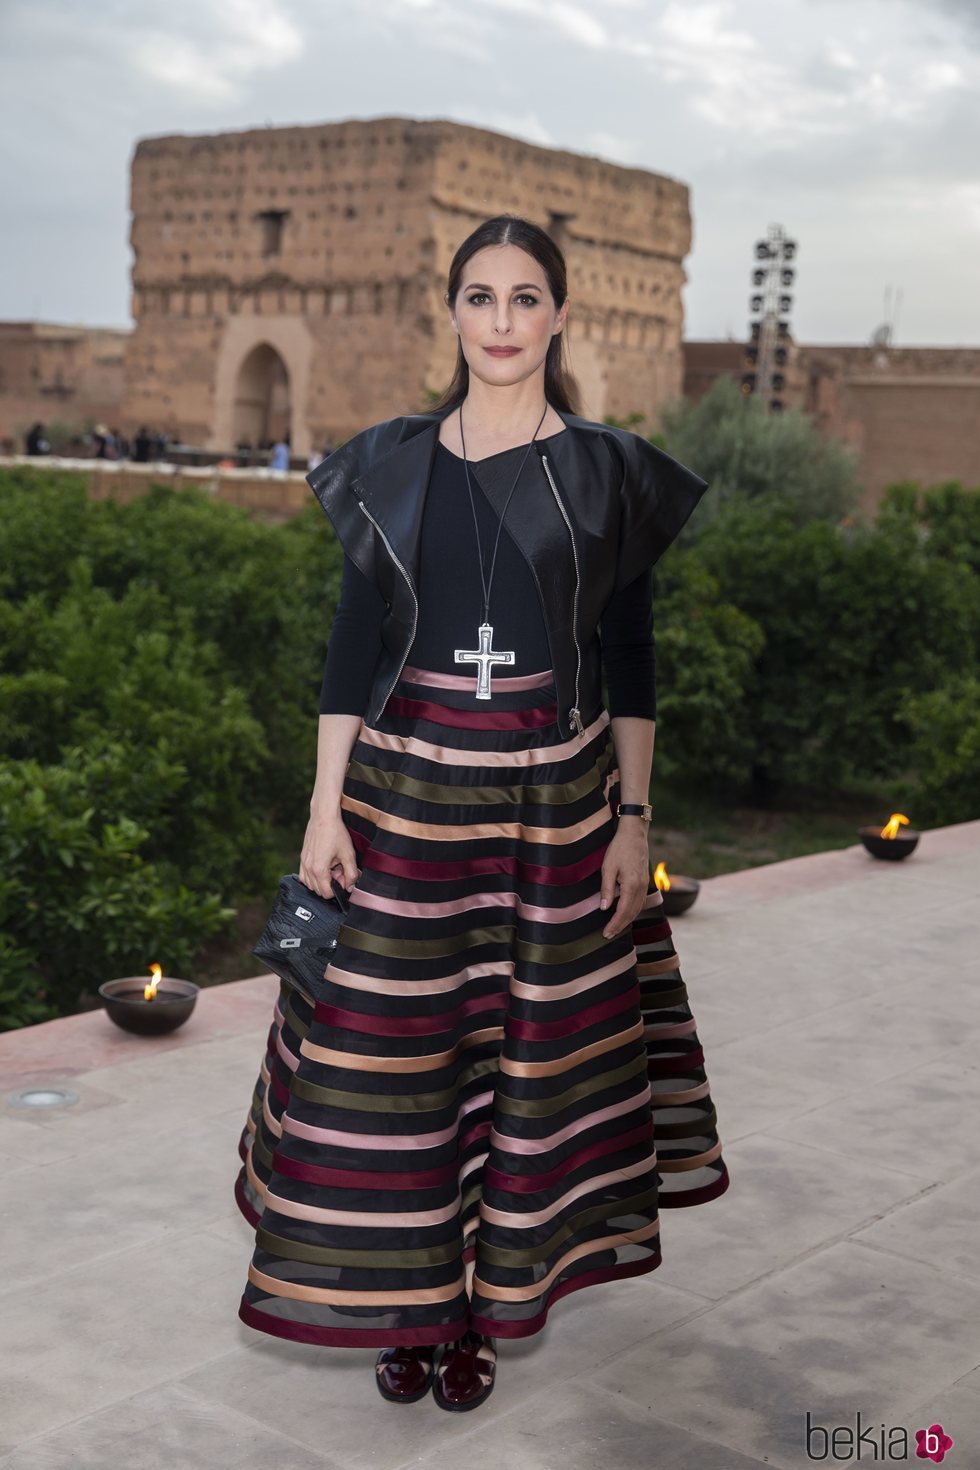 Amira Casar acude al evento de Dior en Marrakech que presenta la colección Cruise 2020